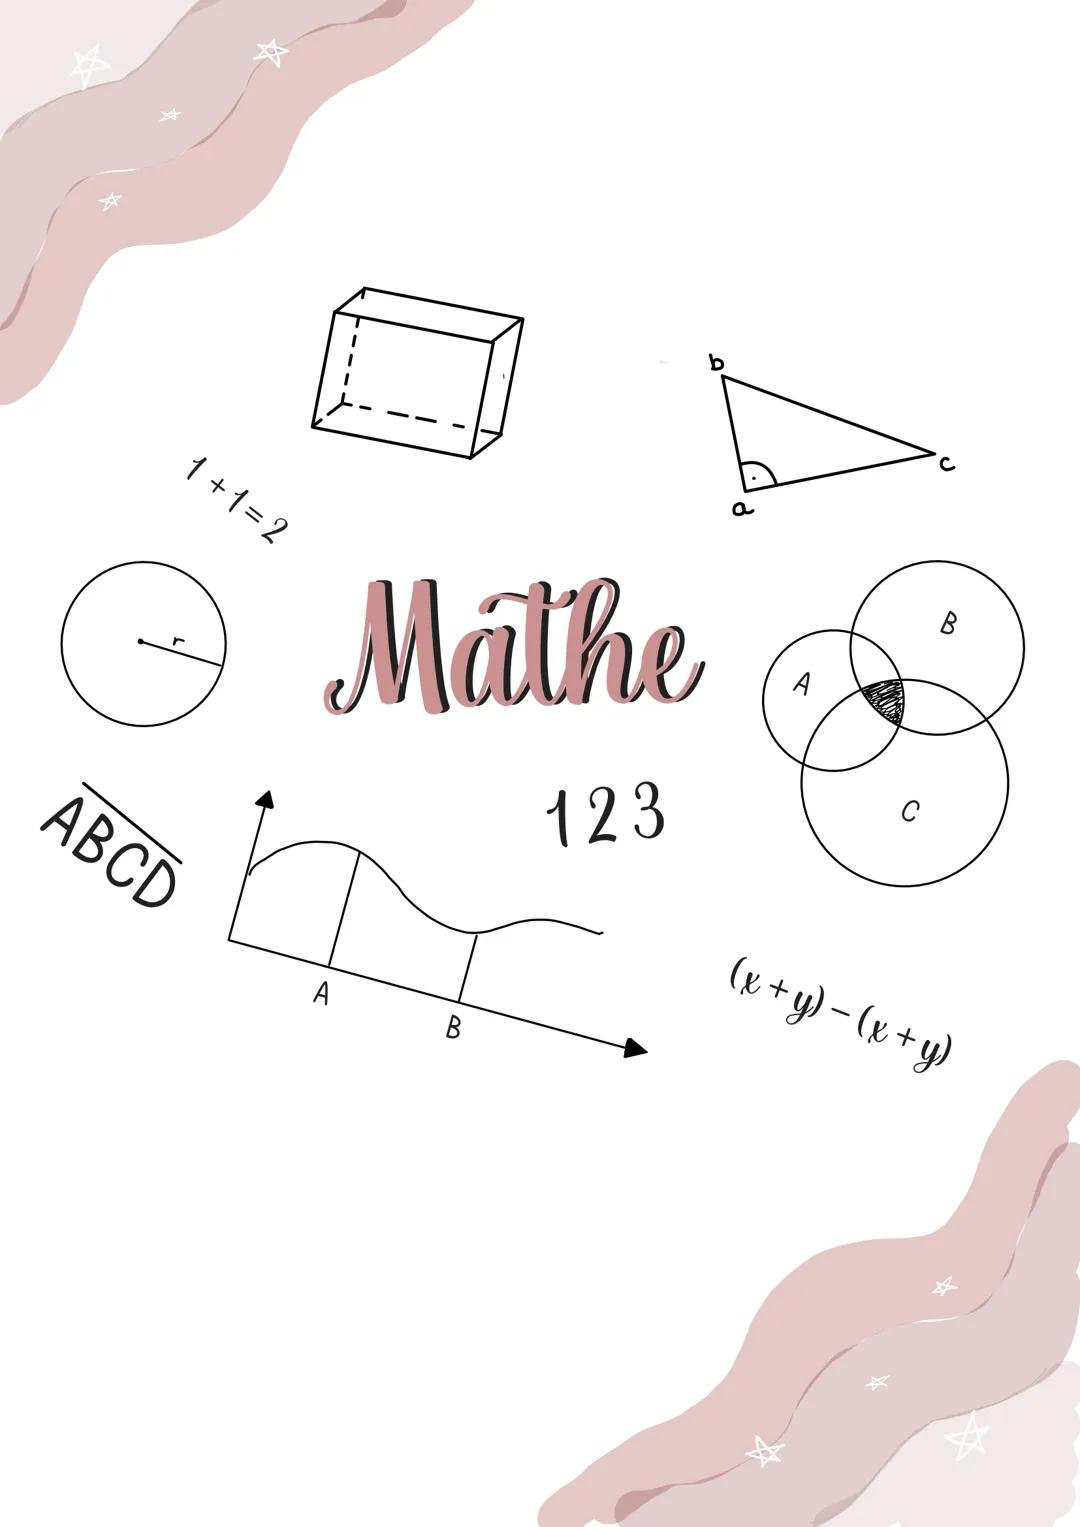 1+1=2
ABCD
Mathe
123
A
B
a
с
B
(x + y) = (x + y) 1+1=2
ABCD
Mathe
123
H
B
a
B
(x + y) - (x + y) 1+1=2
ABCD
Mathe
123
A
B
B
(x + y) - (x + y)